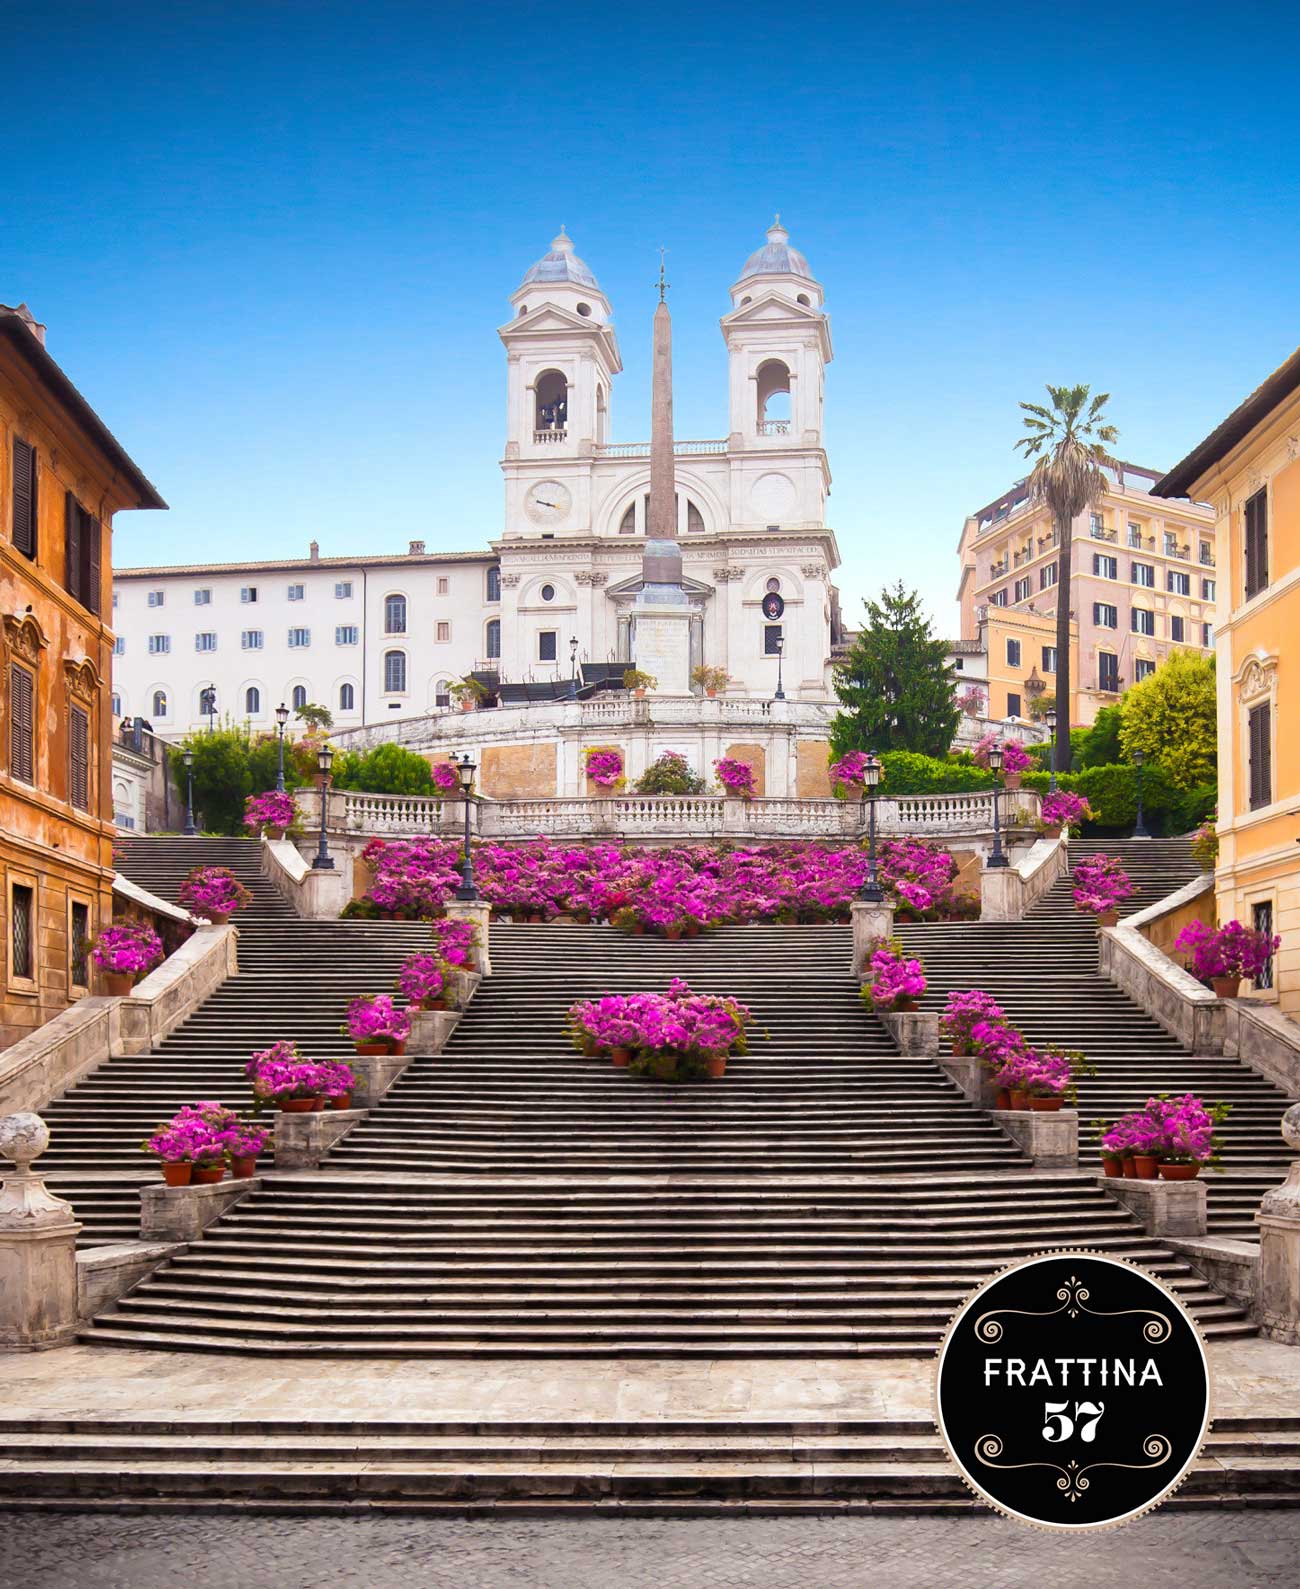 scalinata trinità de' monti roma bnb romantico roma centro storico piazza di spagna via frattina 57